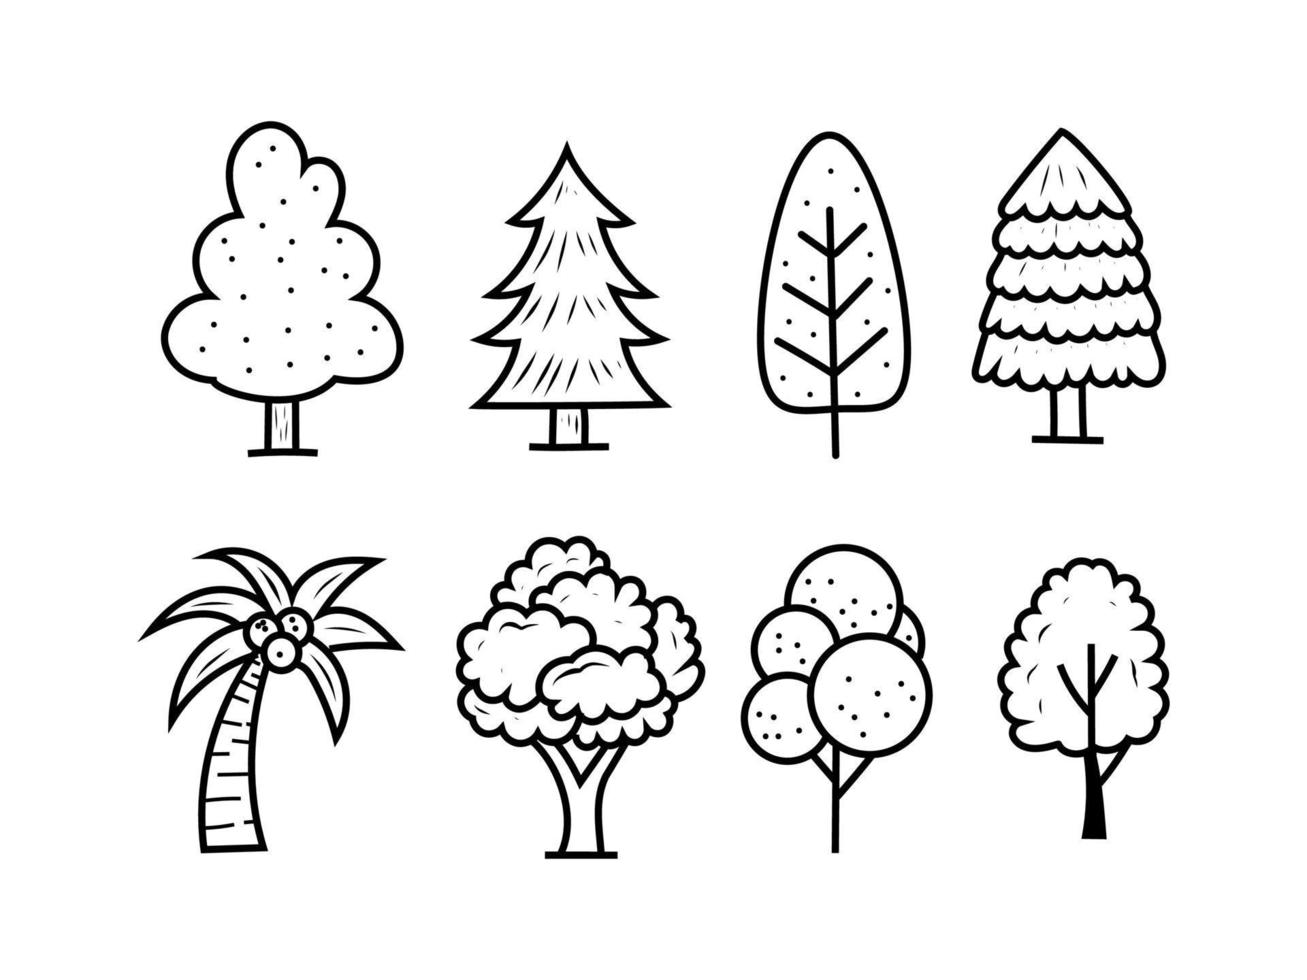 conjunto de ilustraciones de vectores de árboles con un lindo estilo dibujado a mano aislado en fondo blanco. árbol, garabato, ilustración